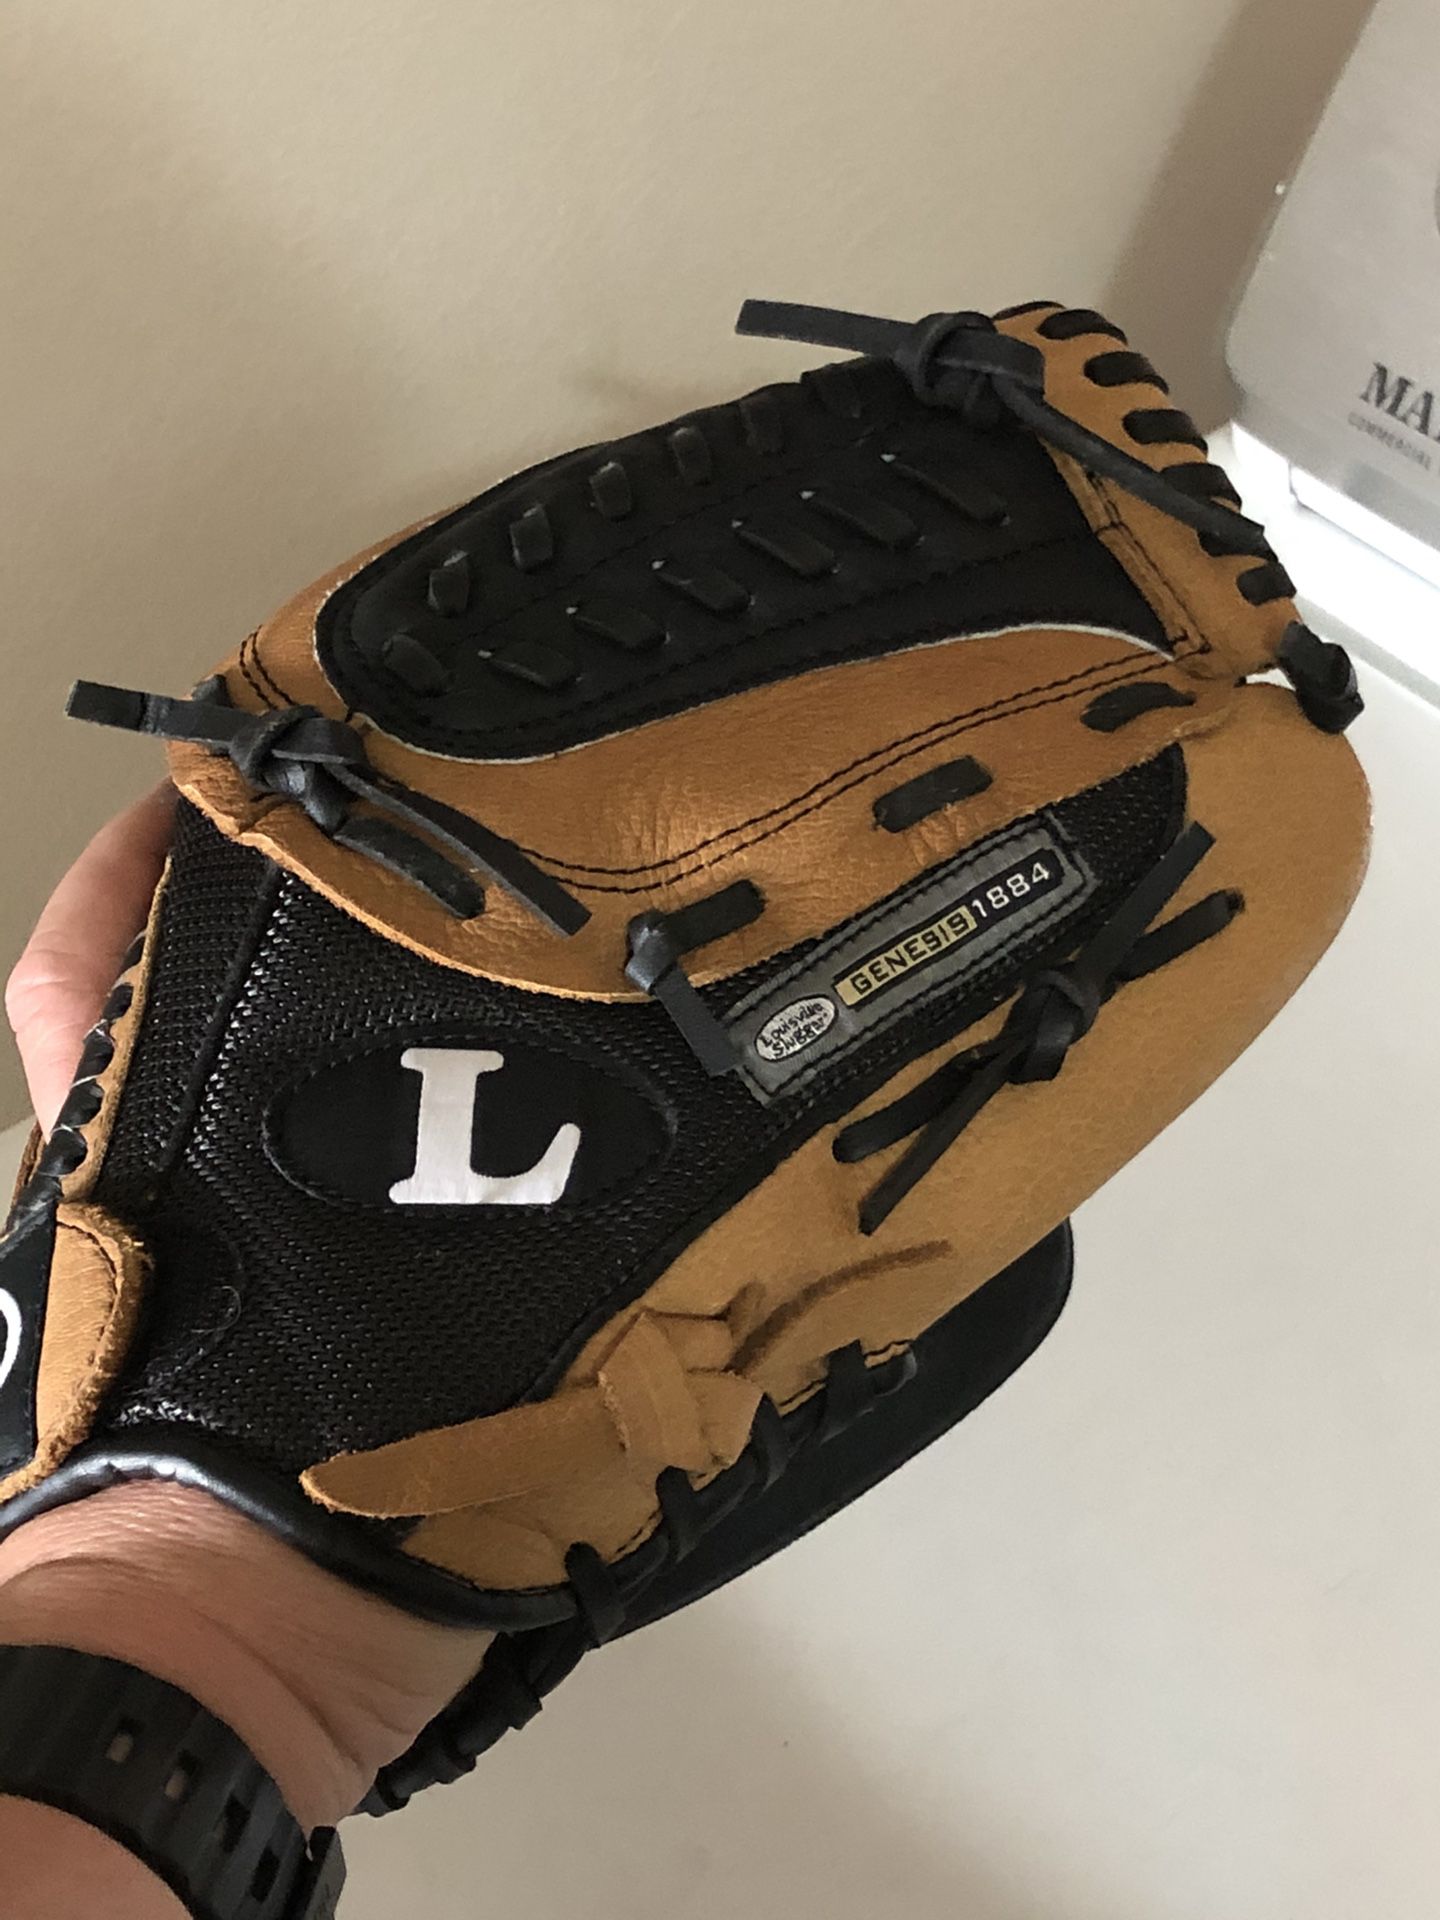 Baseball glove size 12”